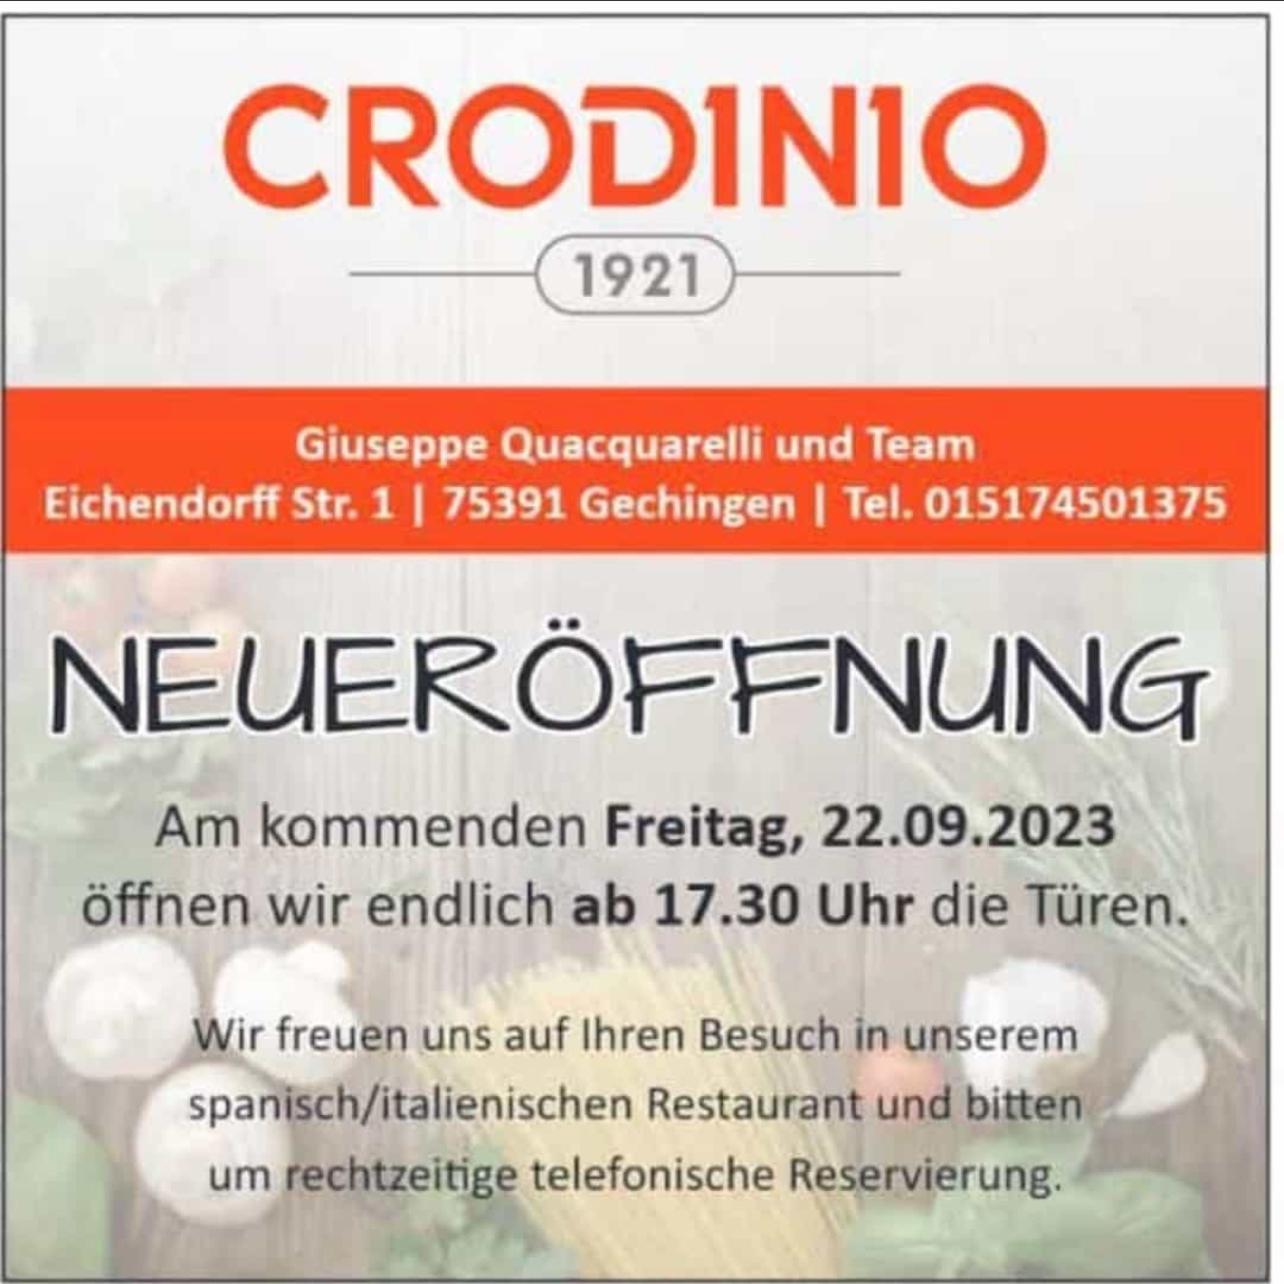 Restaurant "Crodinio 1921" in Gechingen